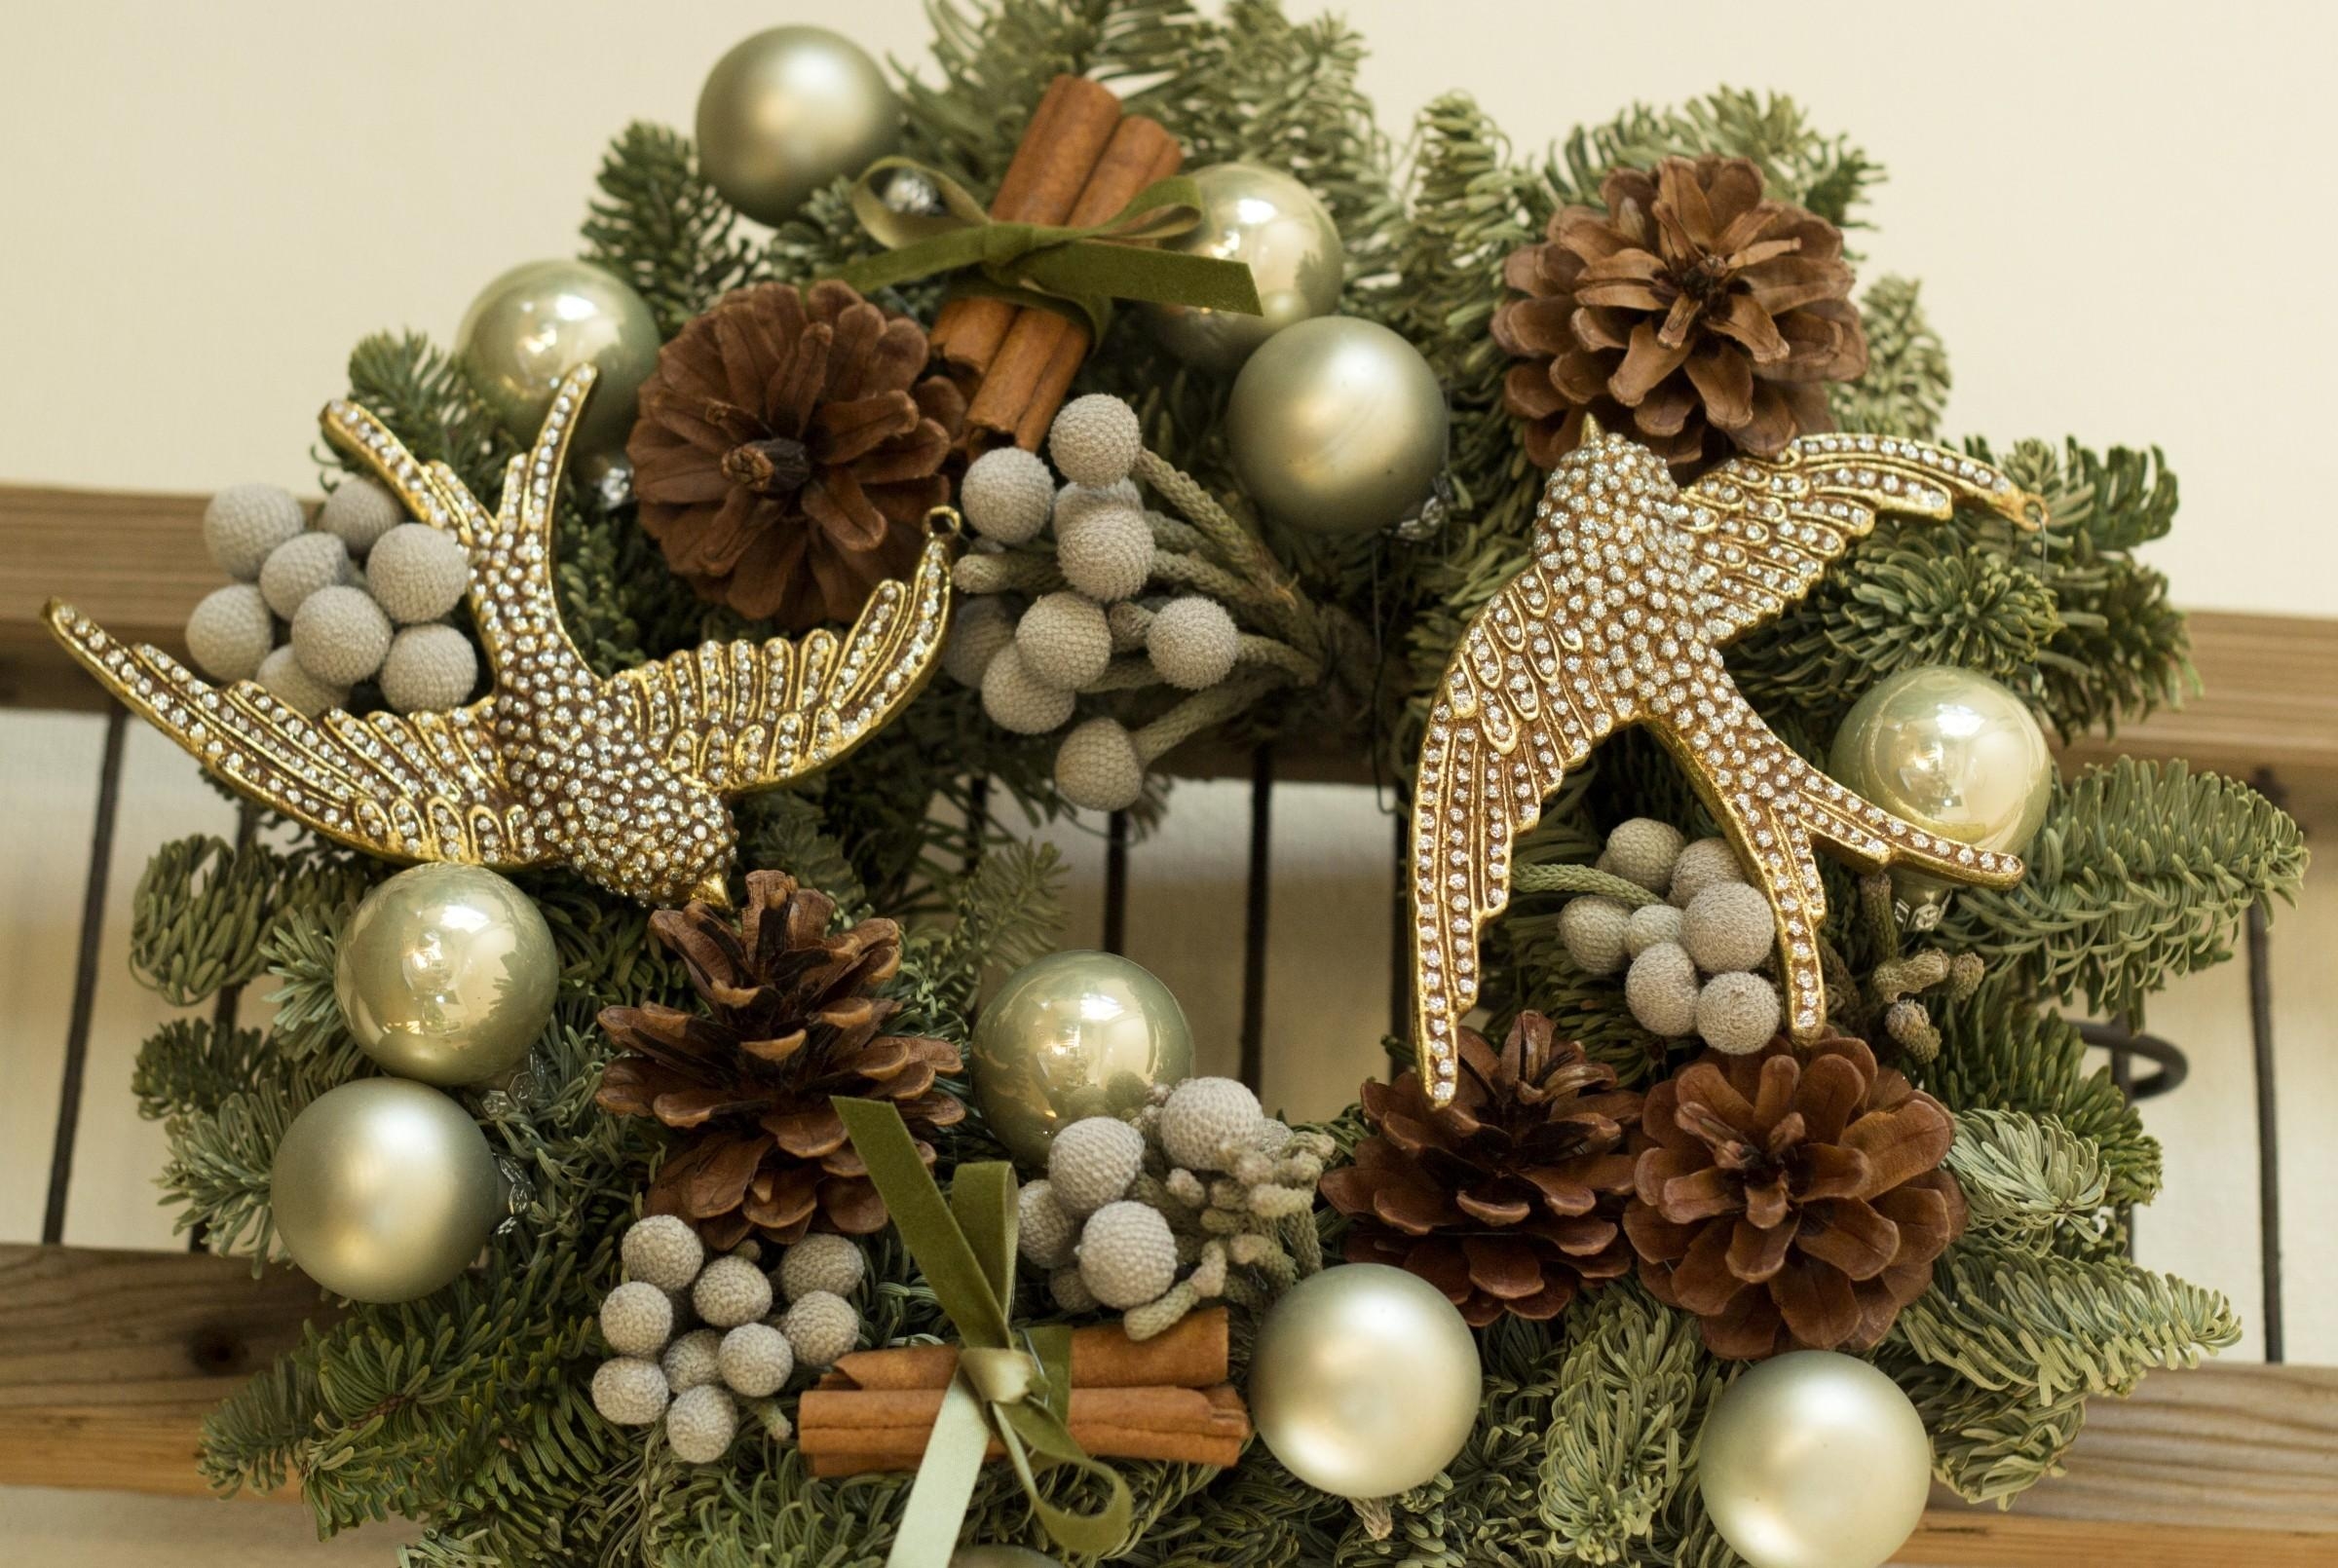 holidays, birds, cones, cinnamon, needles, balls, wreath, attribute